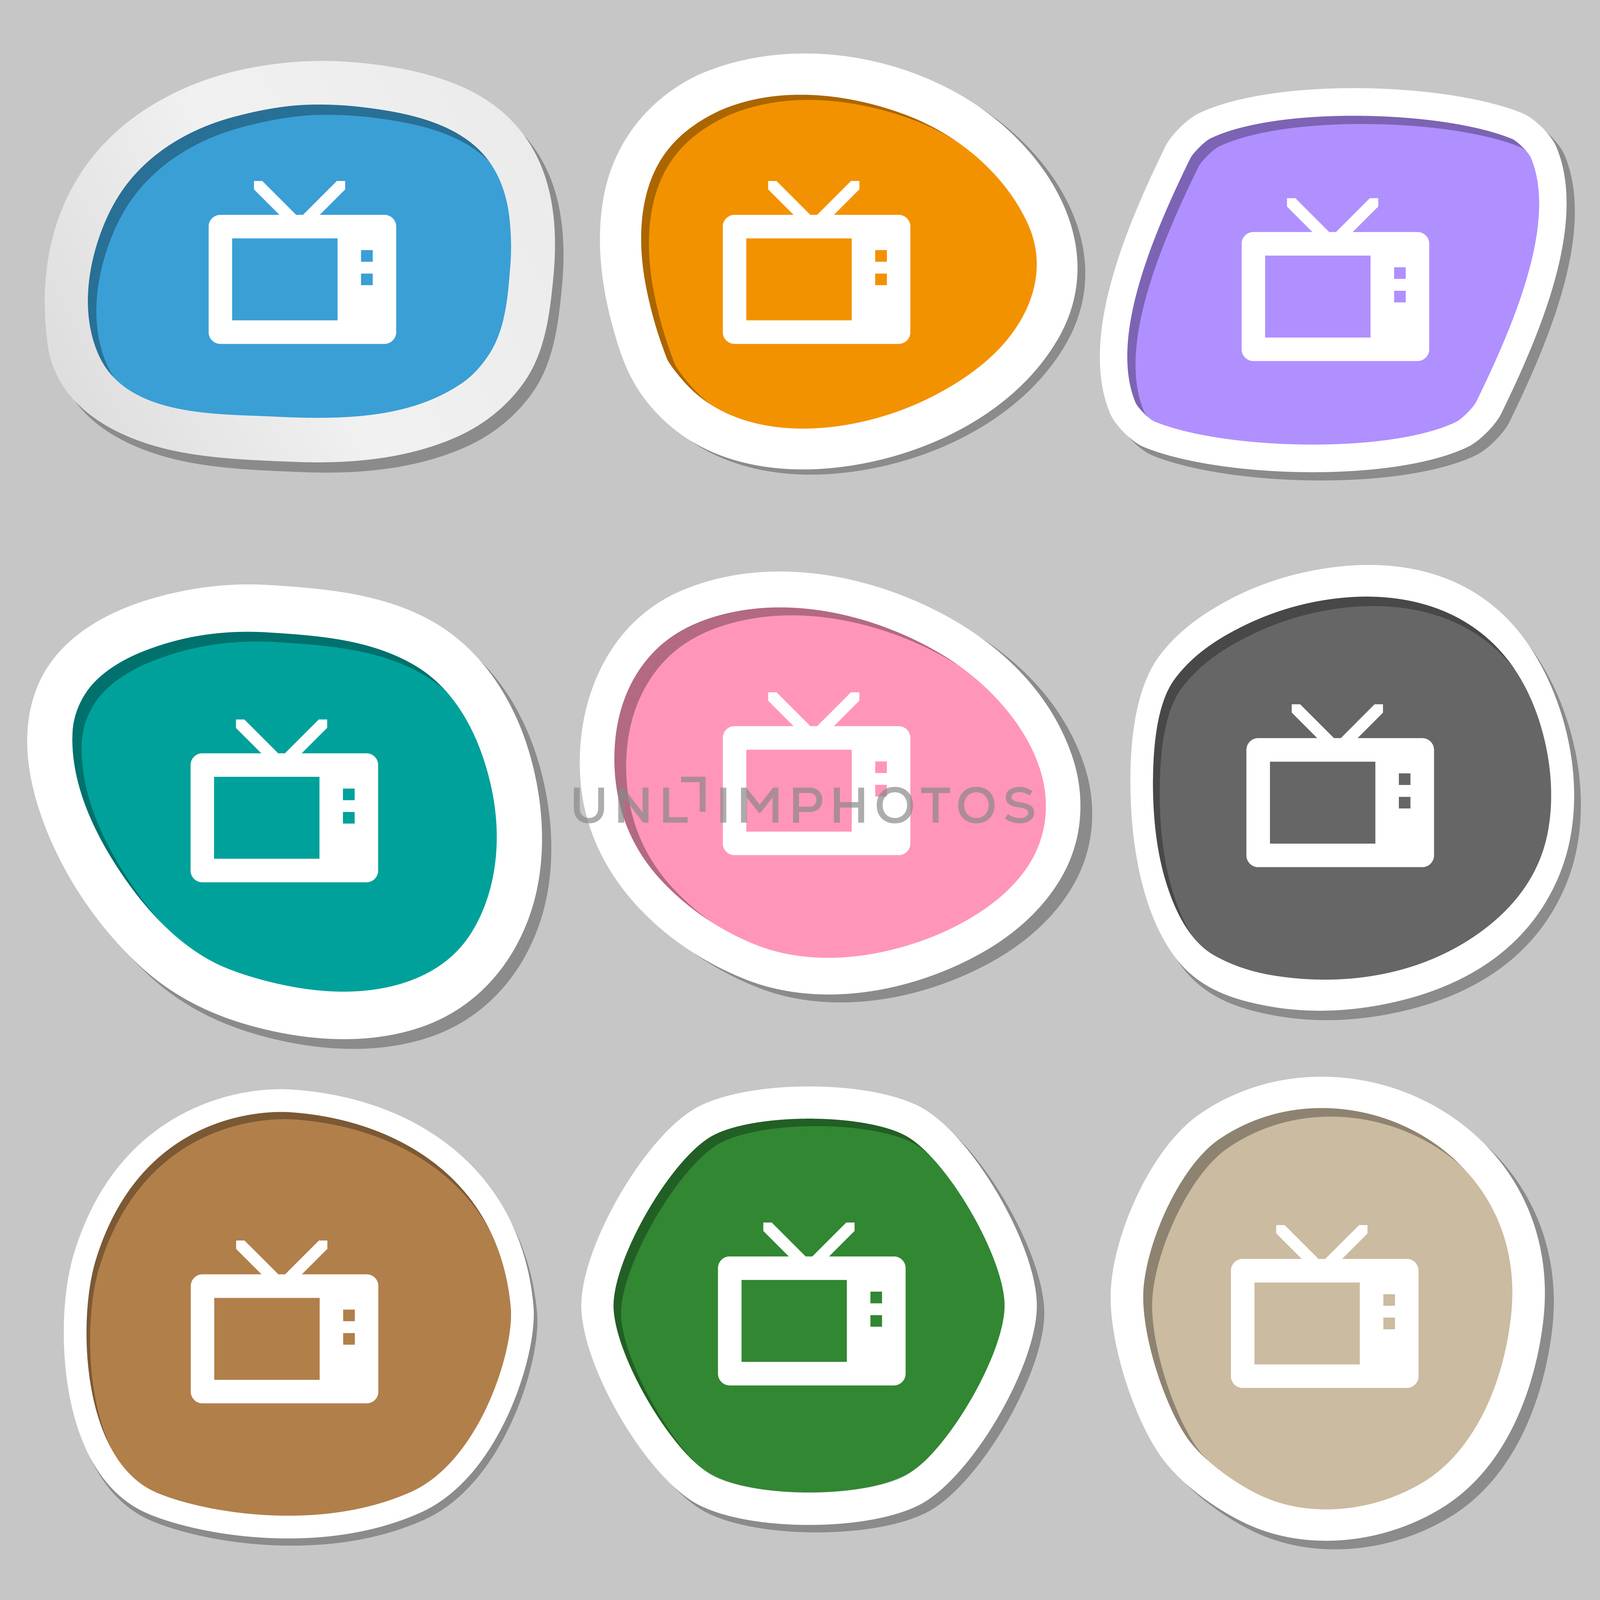 Retro TV mode icon symbols. Multicolored paper stickers.  by serhii_lohvyniuk